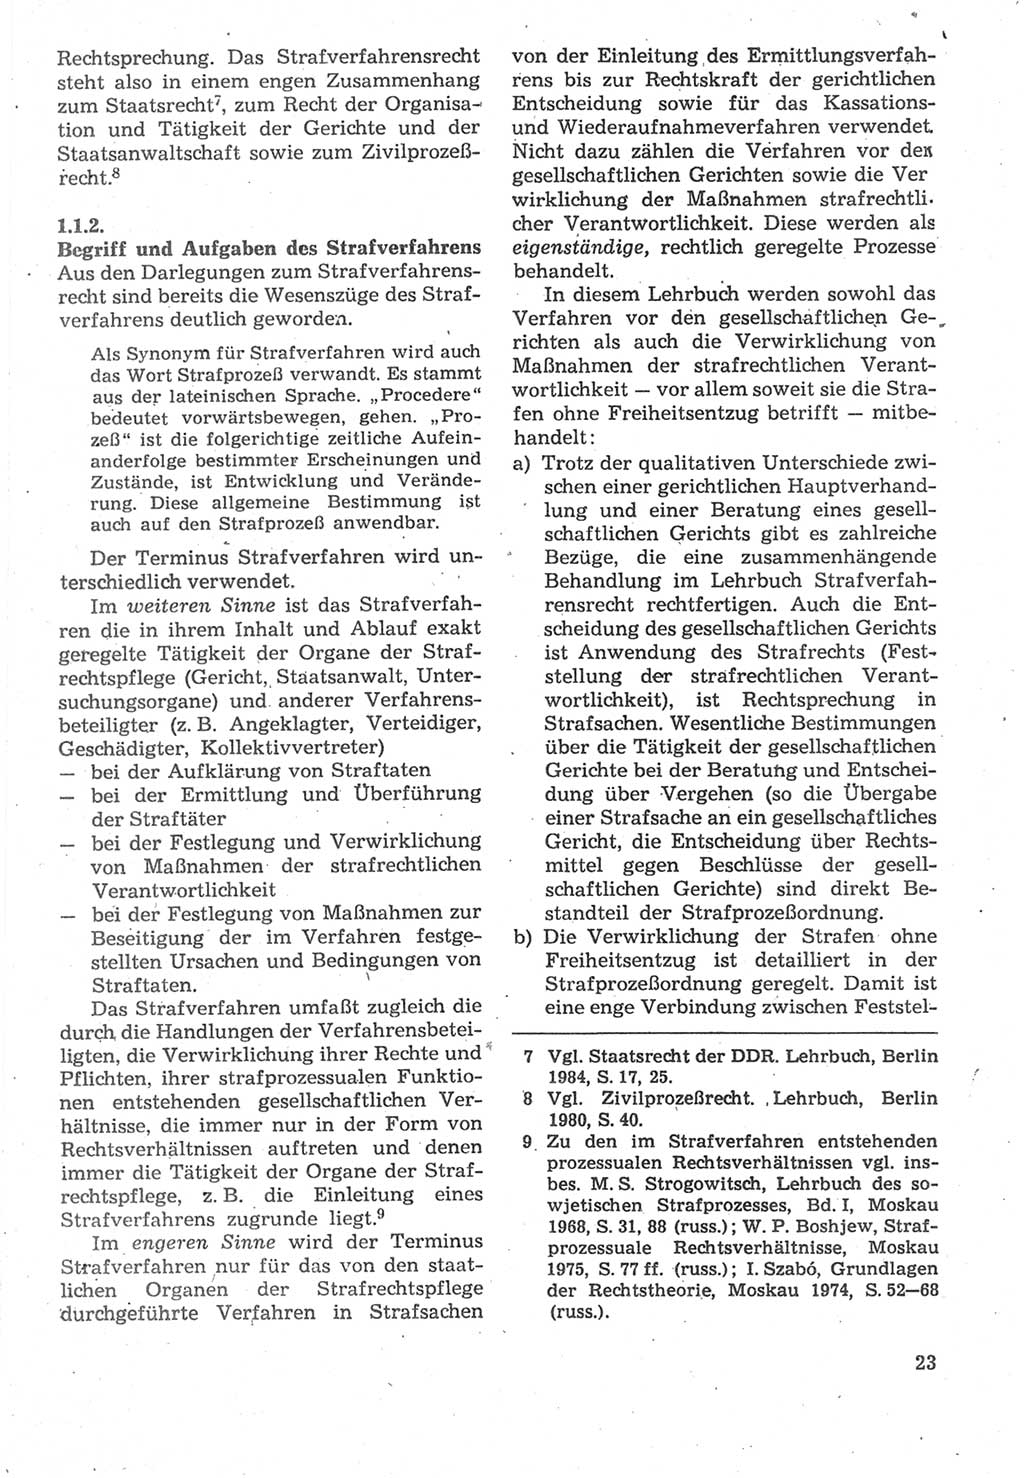 Strafverfahrensrecht [Deutsche Demokratische Republik (DDR)], Lehrbuch 1987, Seite 23 (Strafverf.-R. DDR Lb. 1987, S. 23)